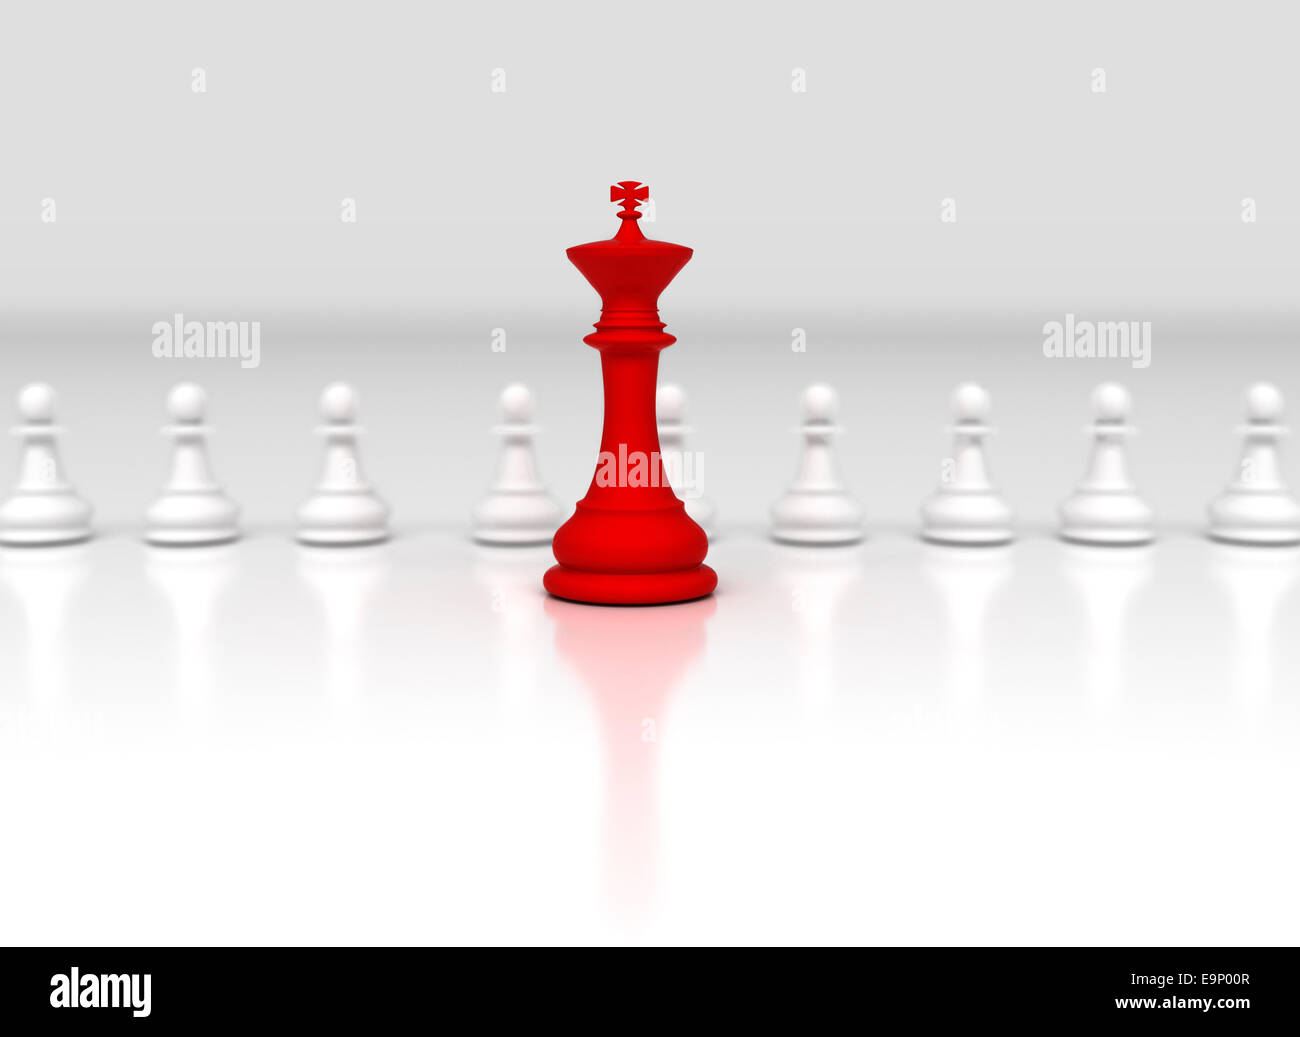 Roten Schachkönig vor Reihe von weißen Bauern Stücke Stockfoto